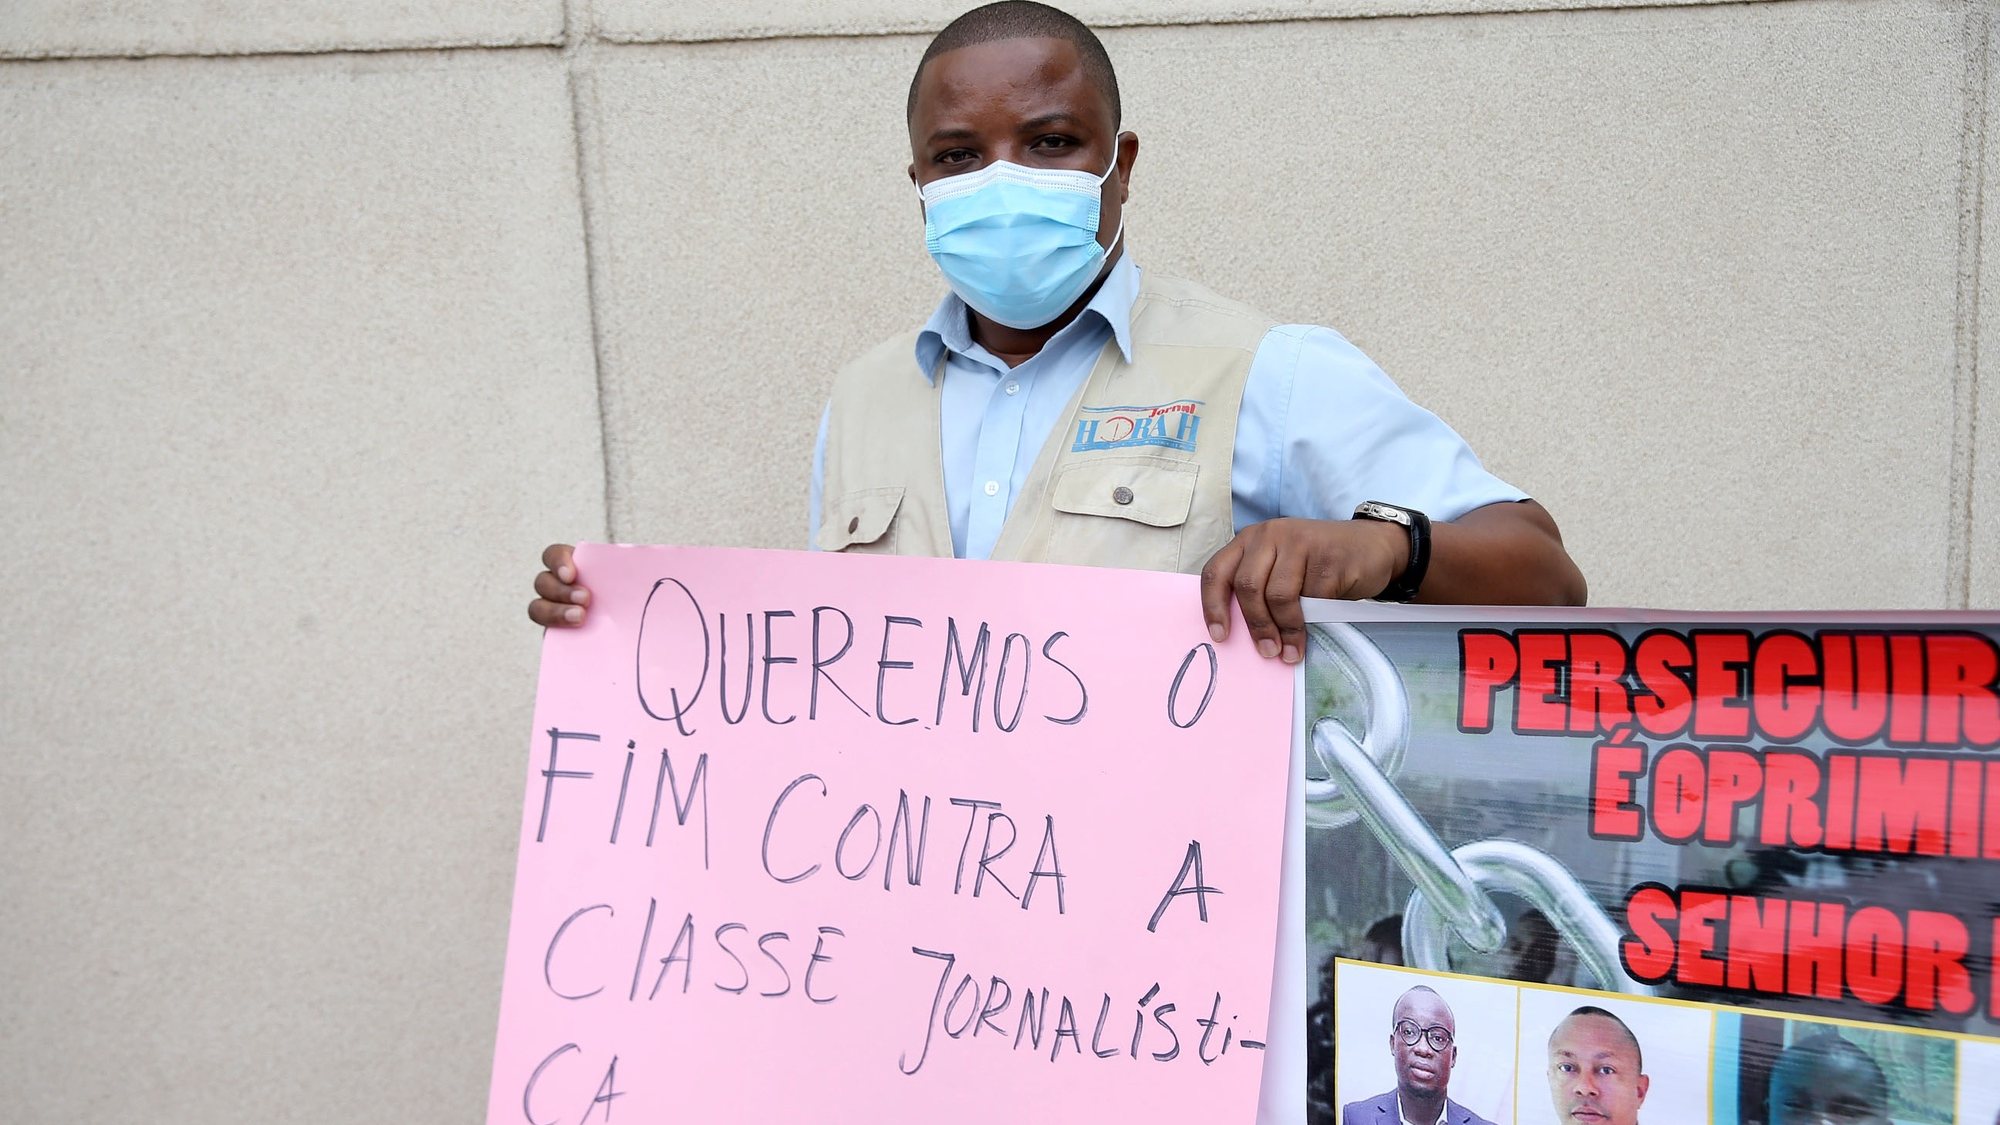 Um jornalista manifesta-se para denunciar alegadas “perseguições” judiciais contra profissionais de comunicação social em Angola, em Luanda, Angola, 15 de junho de 2021. AMPE ROGÉRIO/LUSA